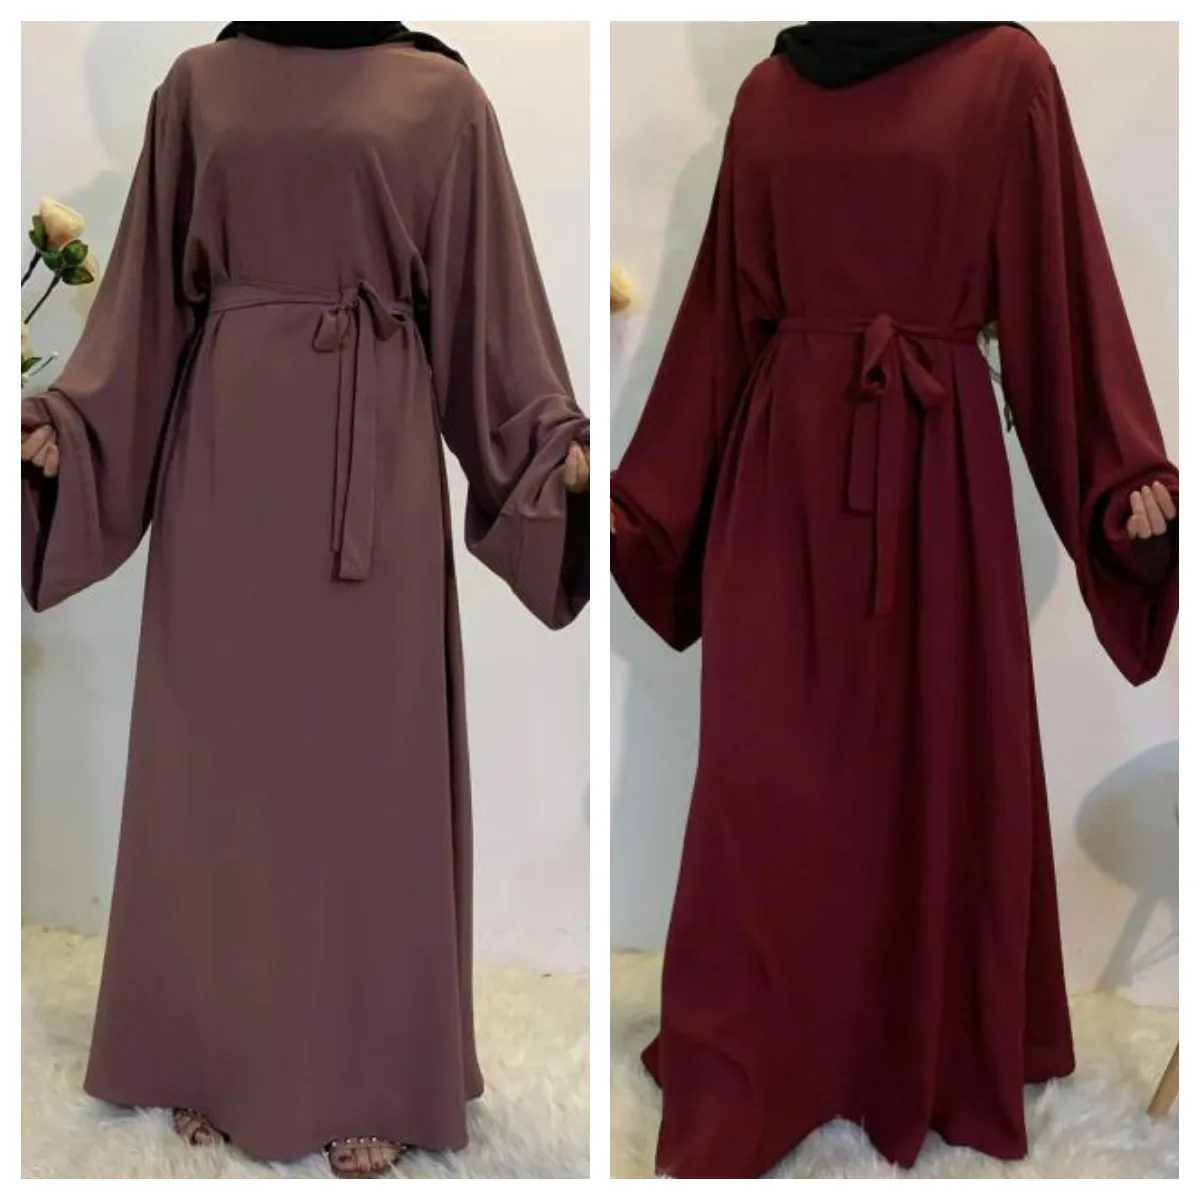 אם ובתה צנוע פשוט סגנון האחרון הבורקה עיצובים ארוך שמלת Hijabs צעיפים מוסלמי העבאיה מכירה לוהטת